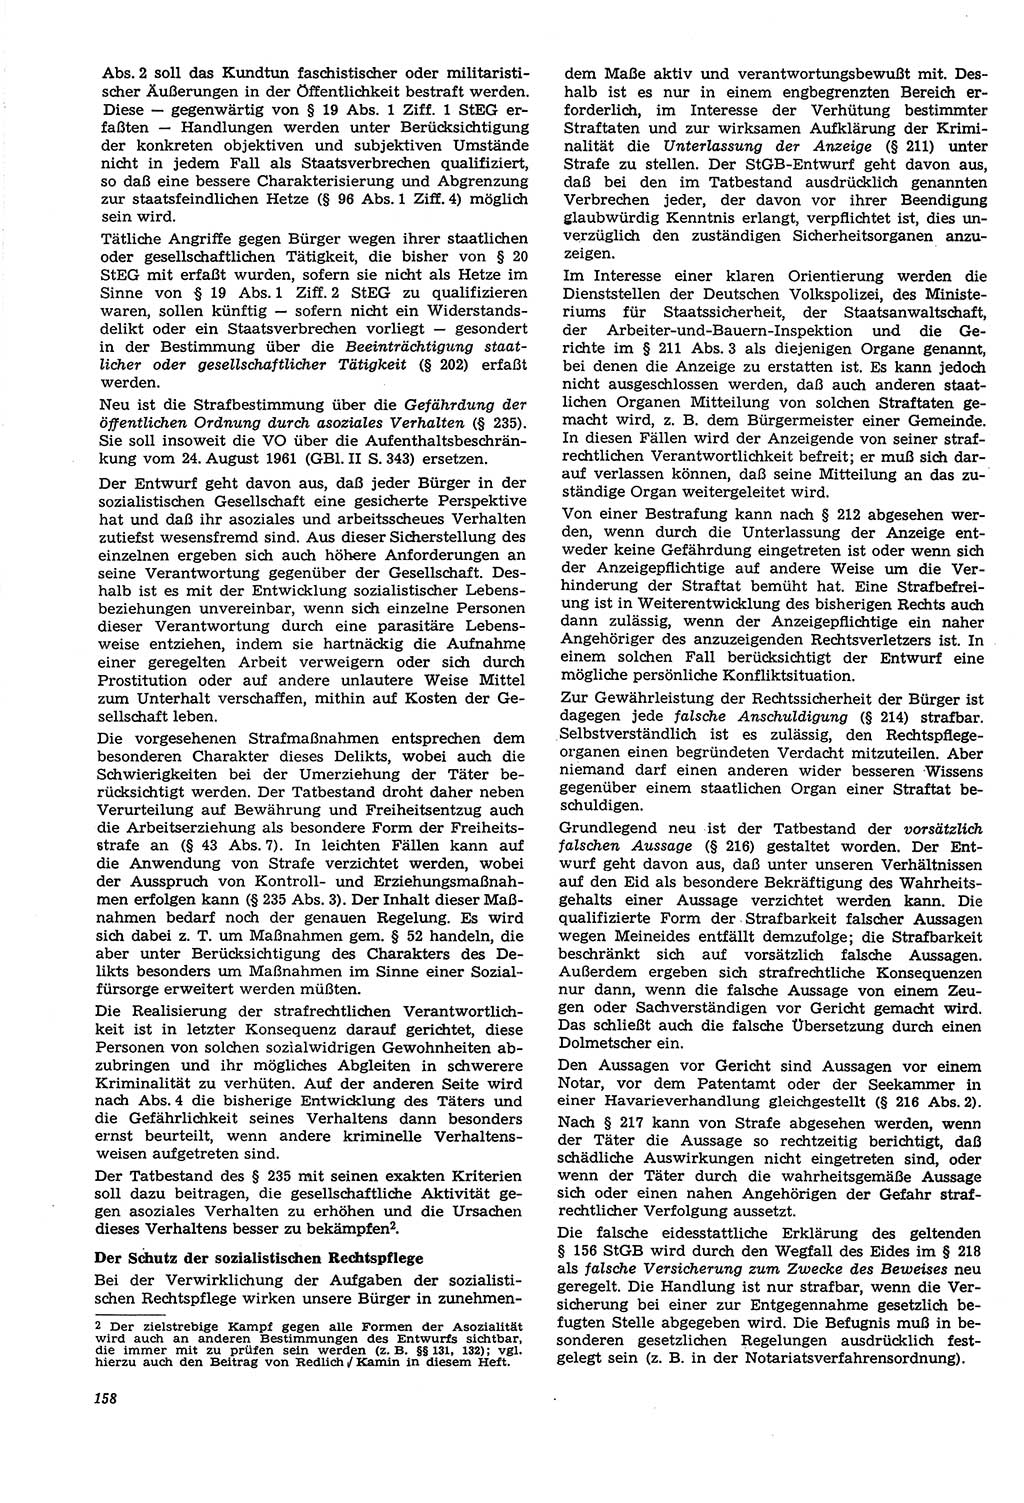 Neue Justiz (NJ), Zeitschrift für Recht und Rechtswissenschaft [Deutsche Demokratische Republik (DDR)], 21. Jahrgang 1967, Seite 158 (NJ DDR 1967, S. 158)